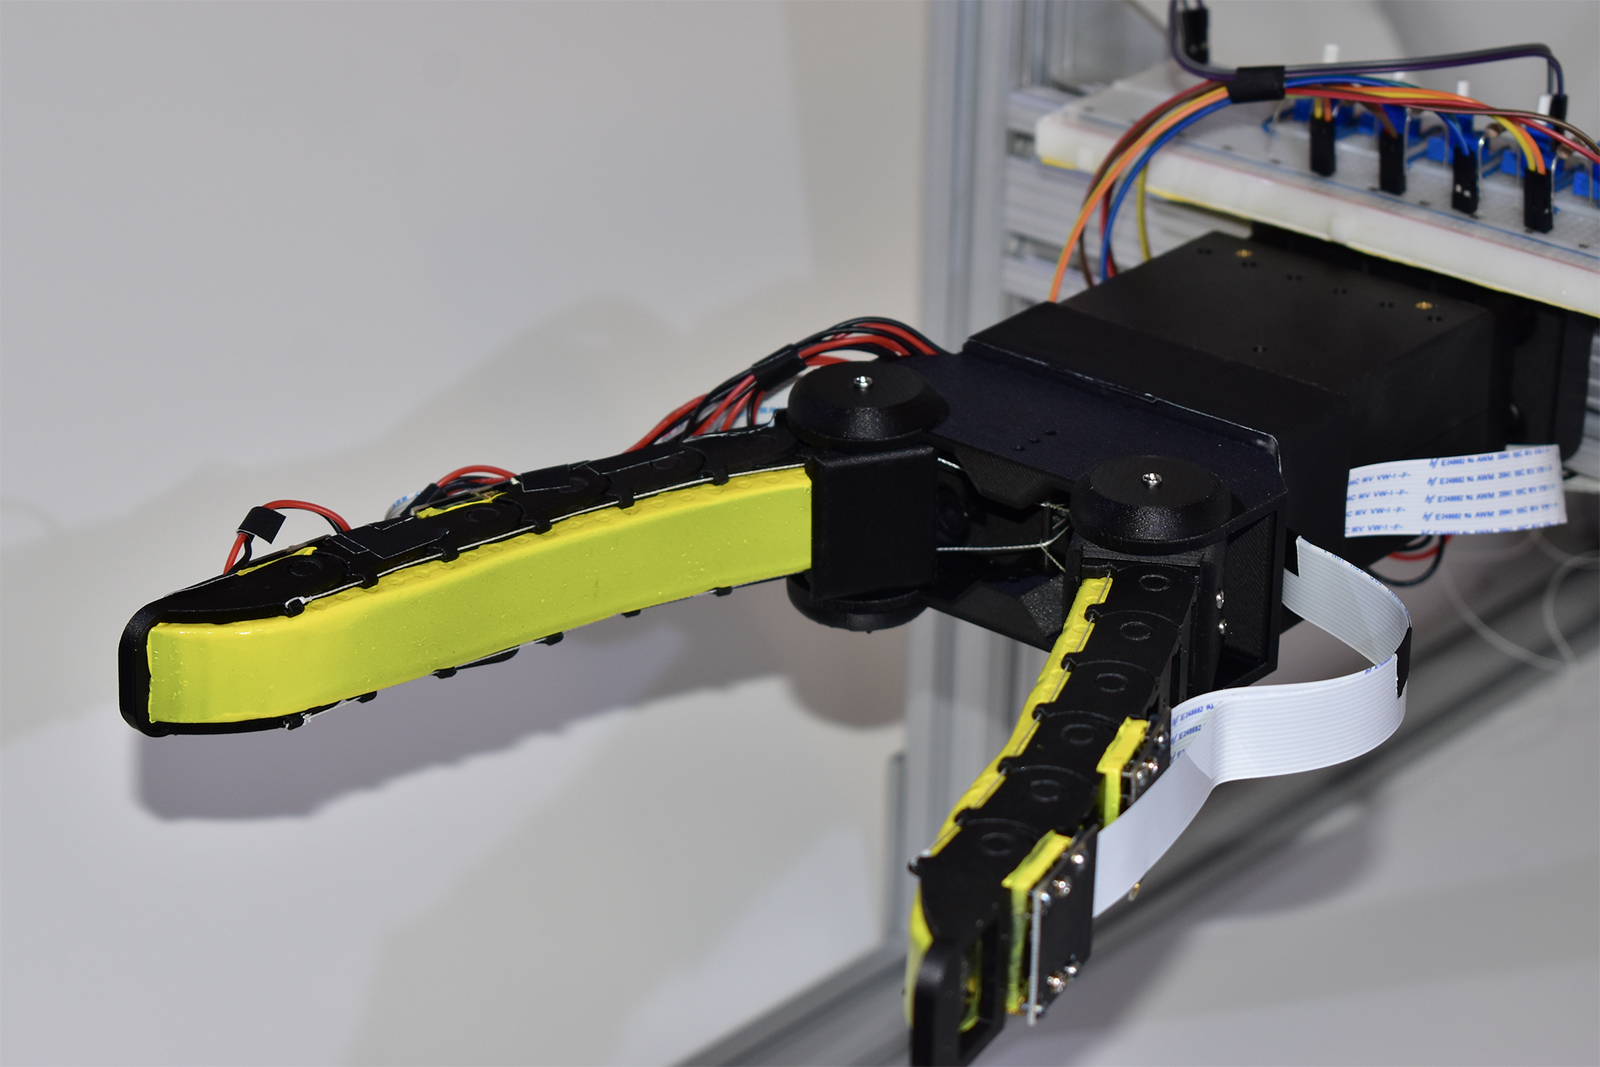 mit csail gelflex robot hand camera gripper closeup copy